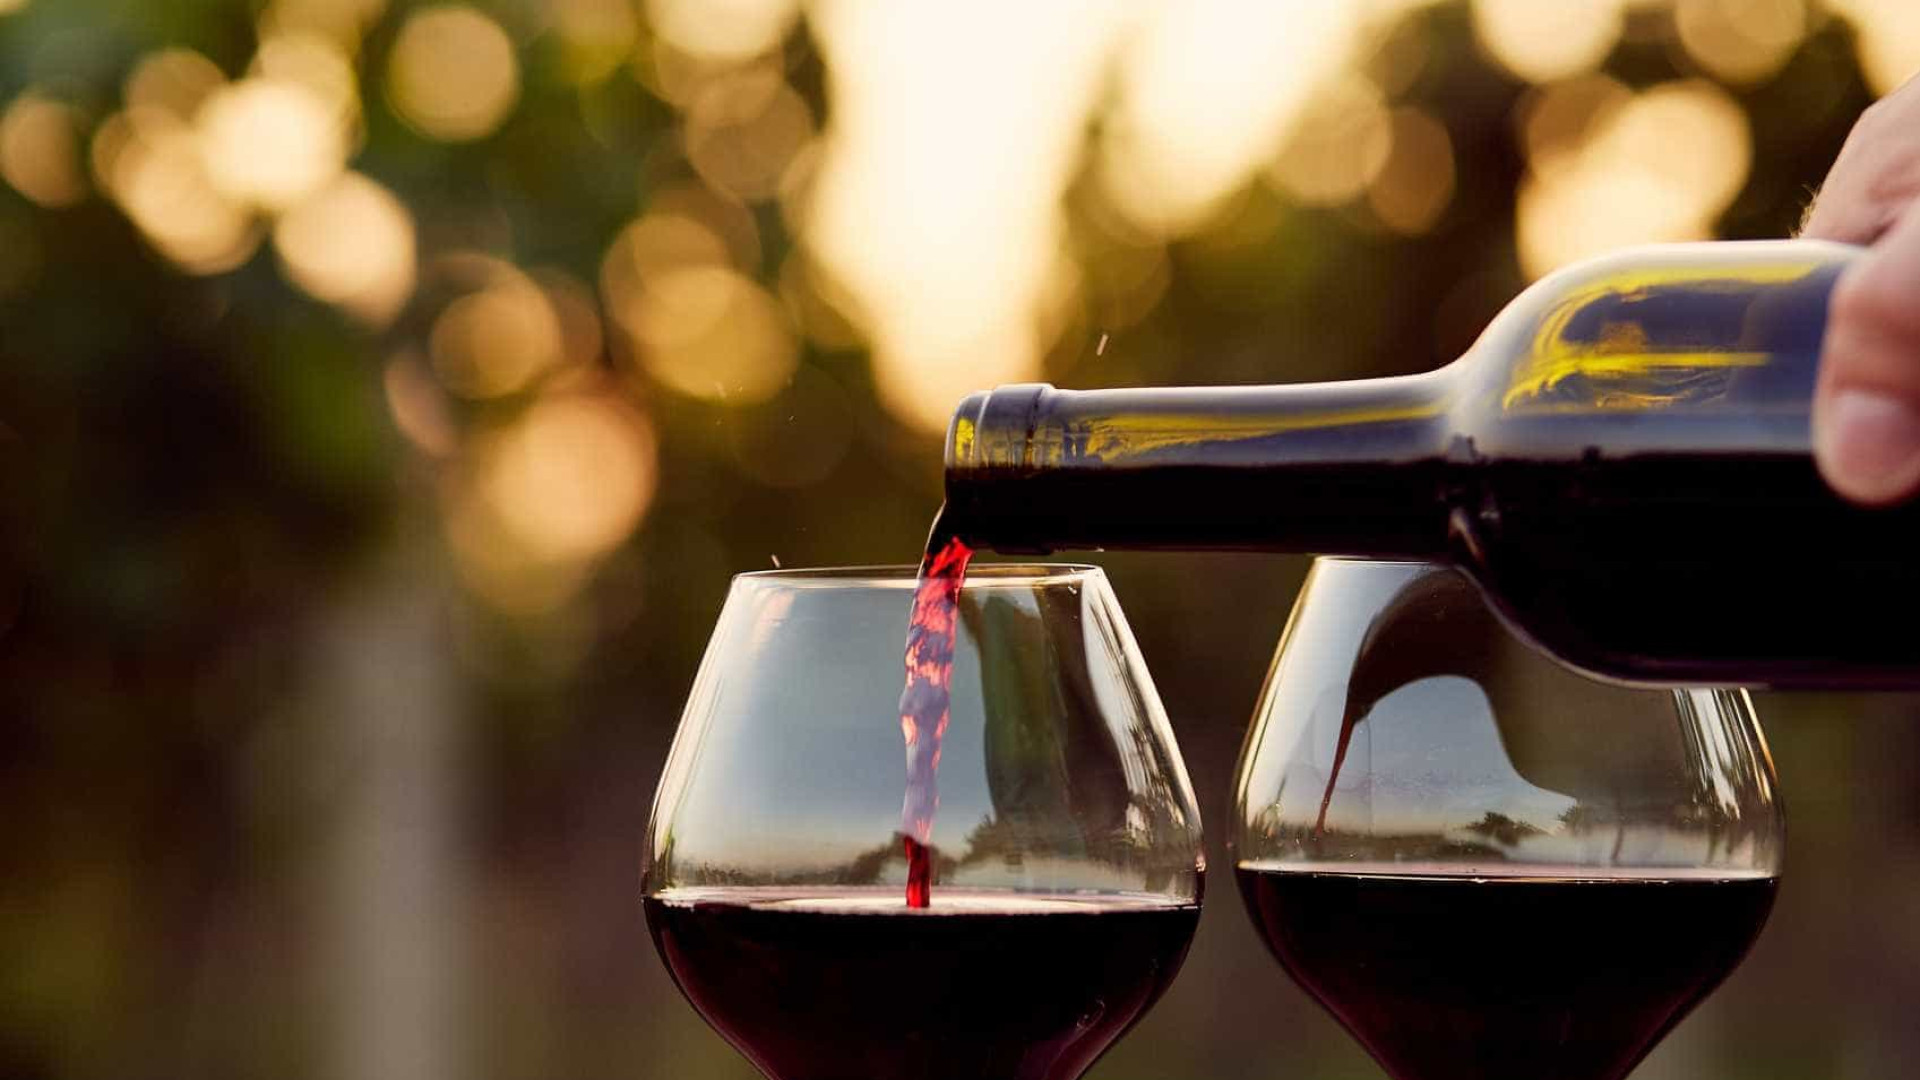 Beber 2 taças de vinho por dia reduz risco de Alzheimer